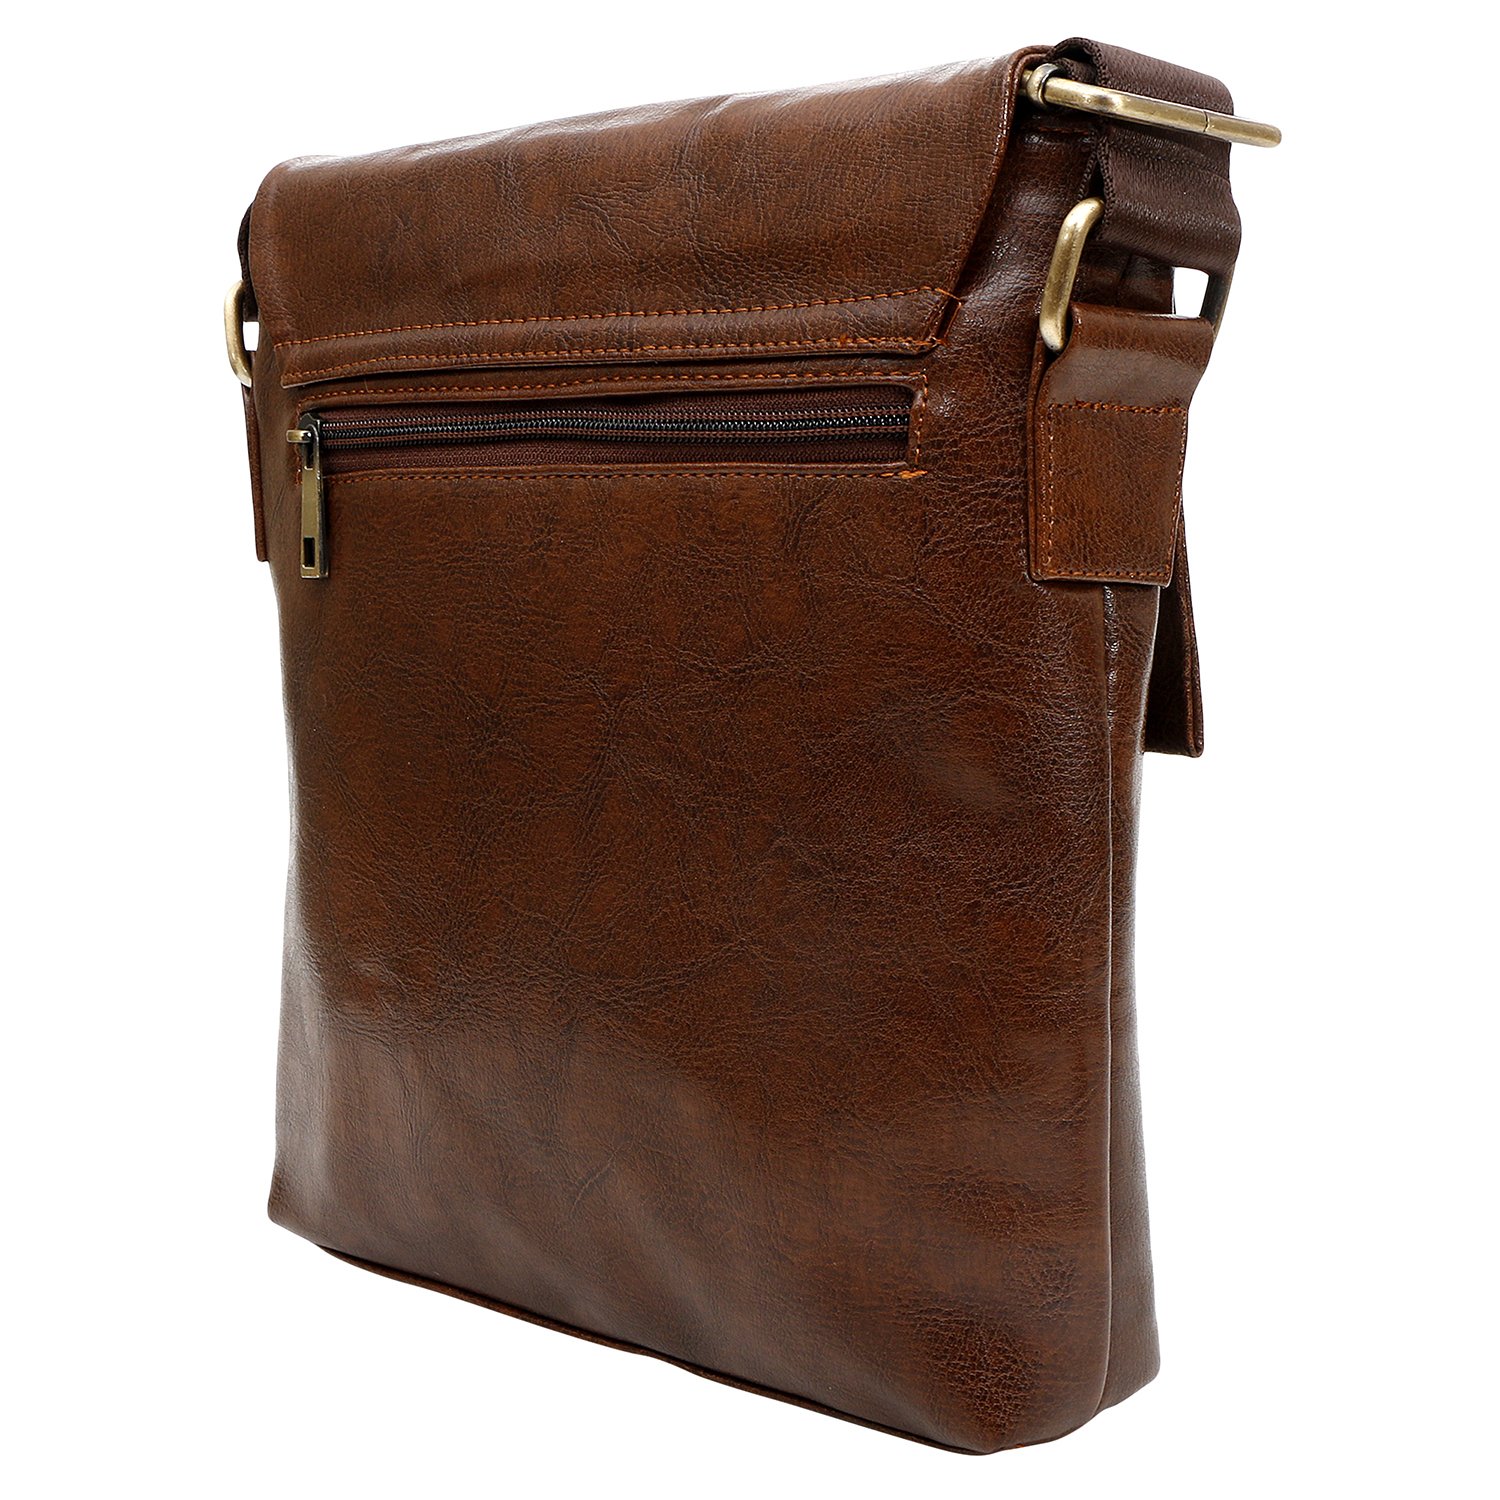 SPHINX Brown Sling Bag swad leathe brown - Price in India | Flipkart.com